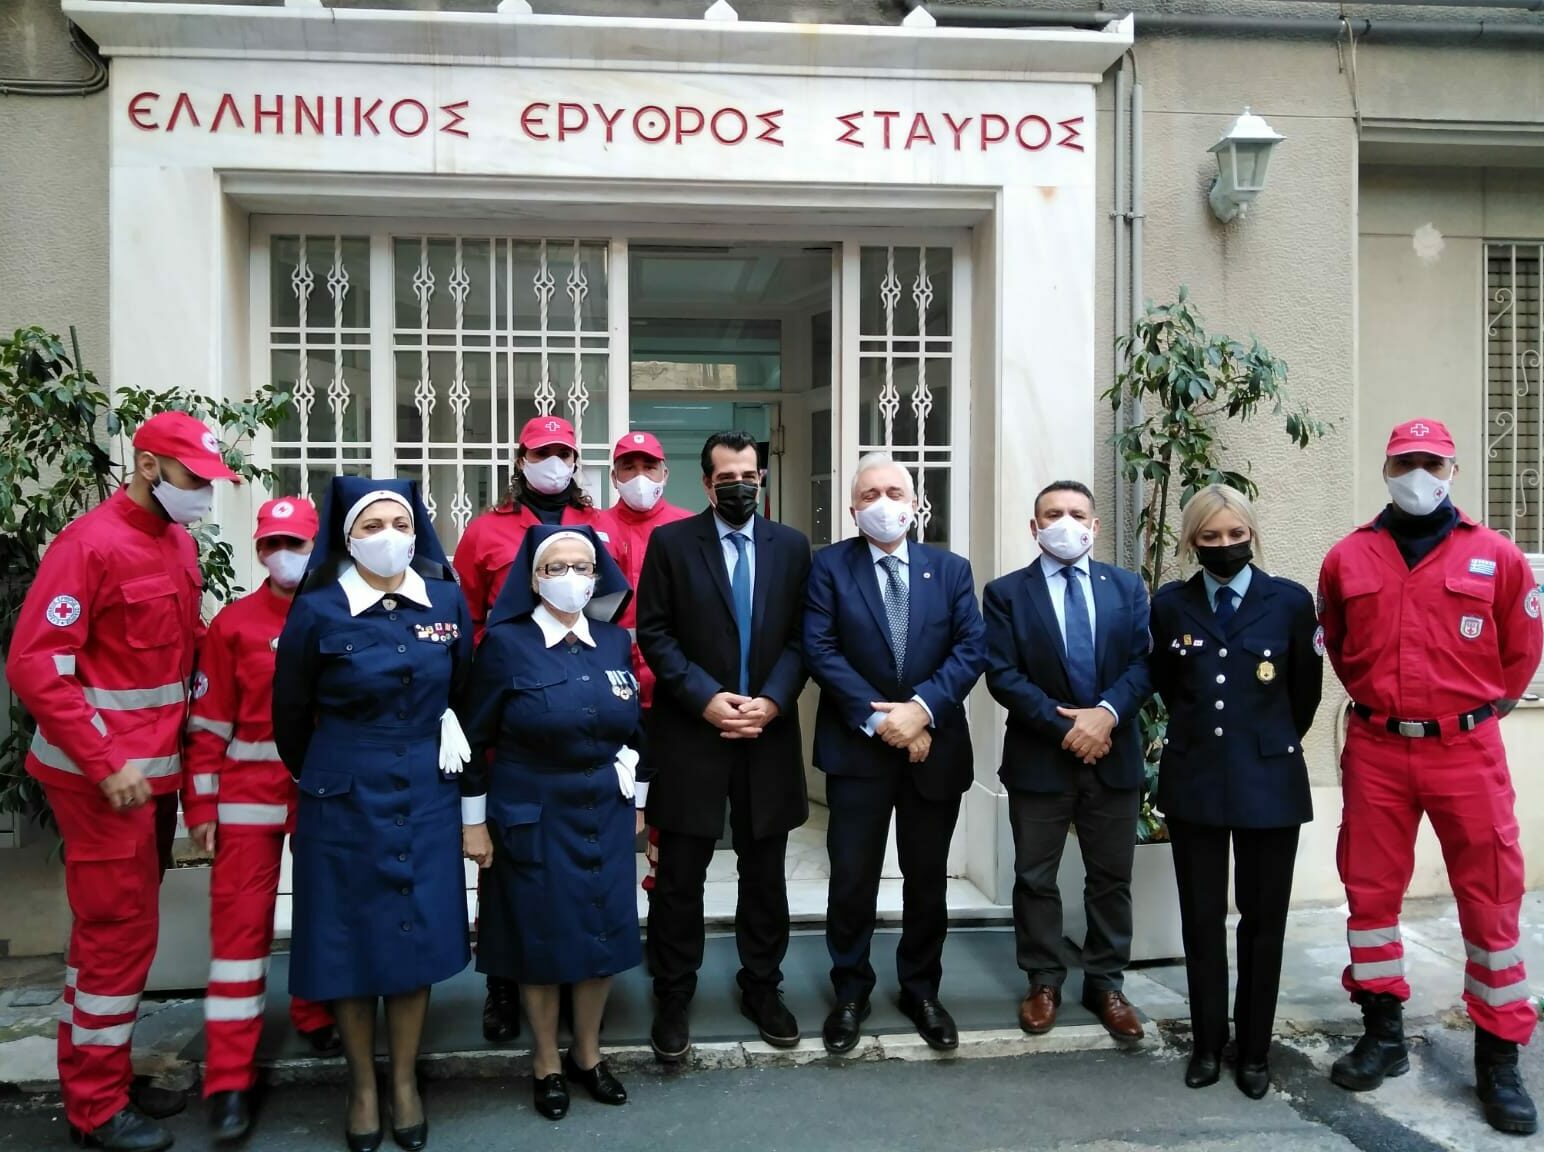 Μνημόνιο Συνεργασίας Υπουργείου Υγείας-Ελληνικού Ερυθρού Σταυρού